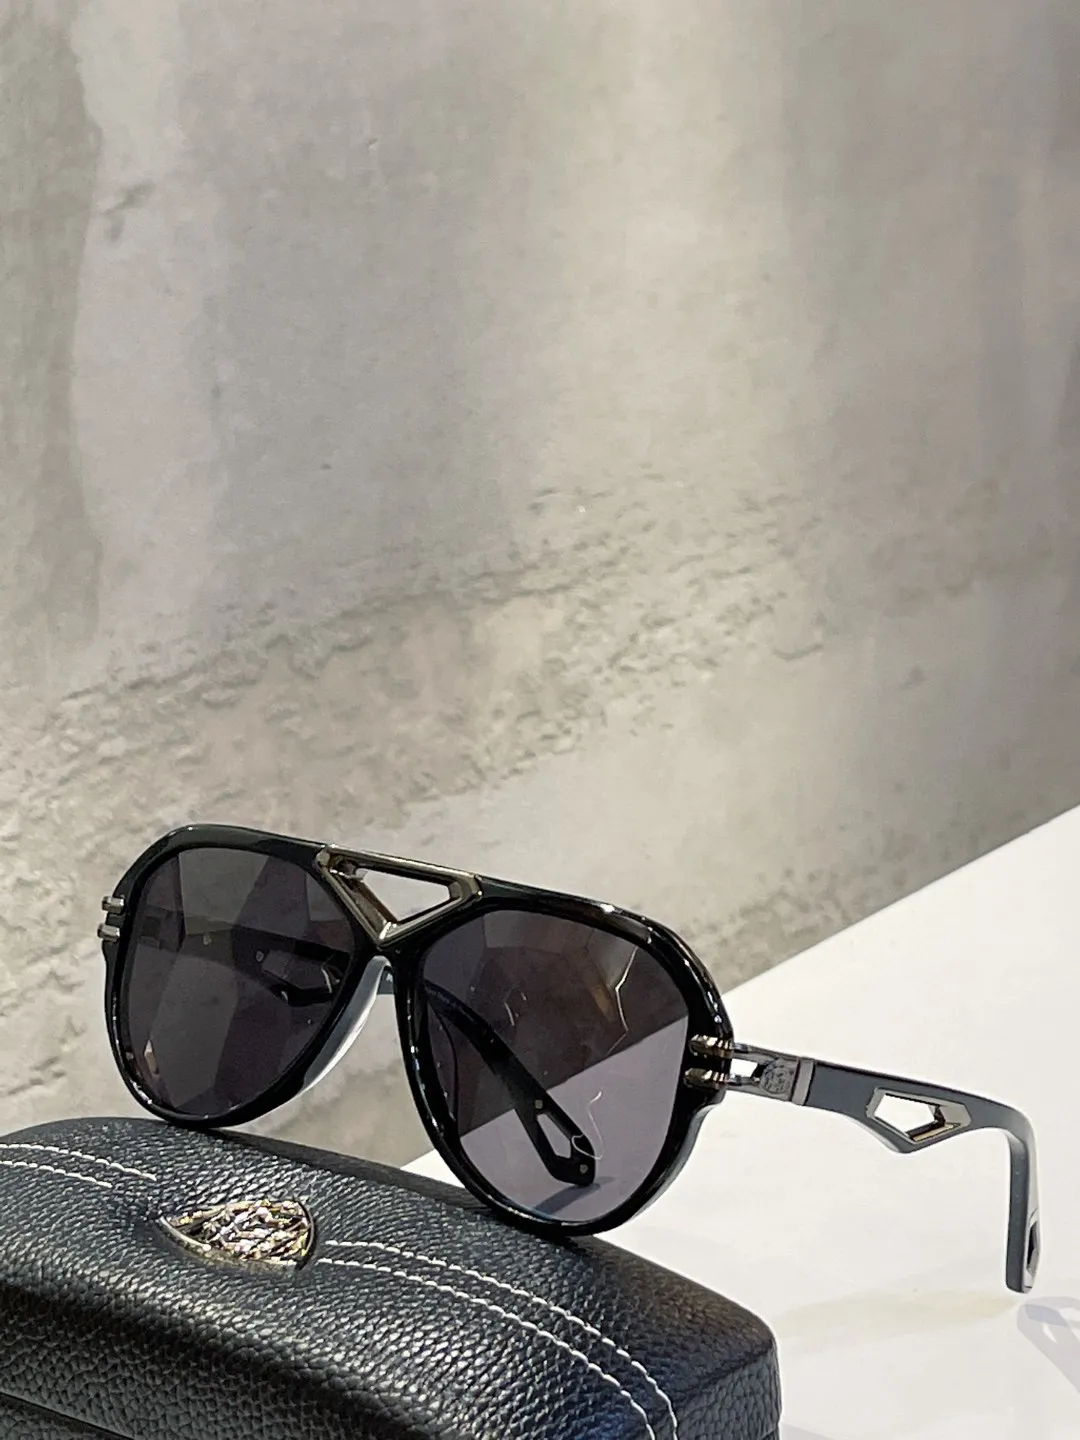 Mayba B-Av-Z35 Top Original de Alta Qualidade Designer Óculos de Sol para Mens Famoso Moda Retro Luxo Marca Óculos De Moda Domens Sunglasses com caixa